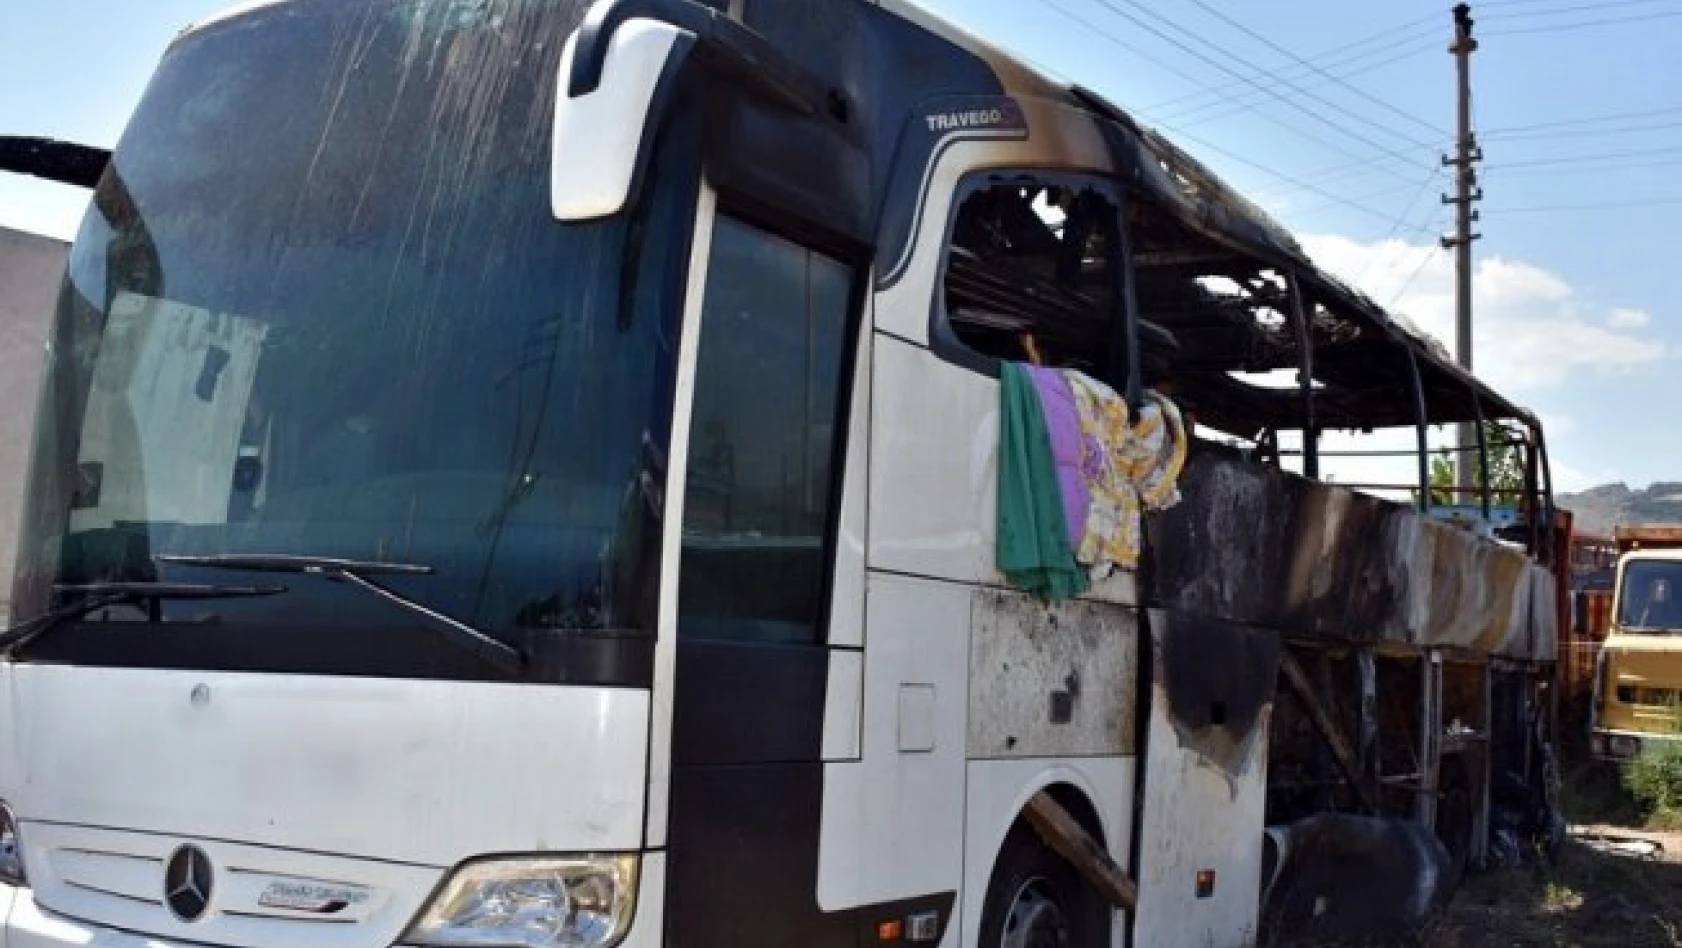 46 yolcunun bulunduğu otobüs alev alev yandı